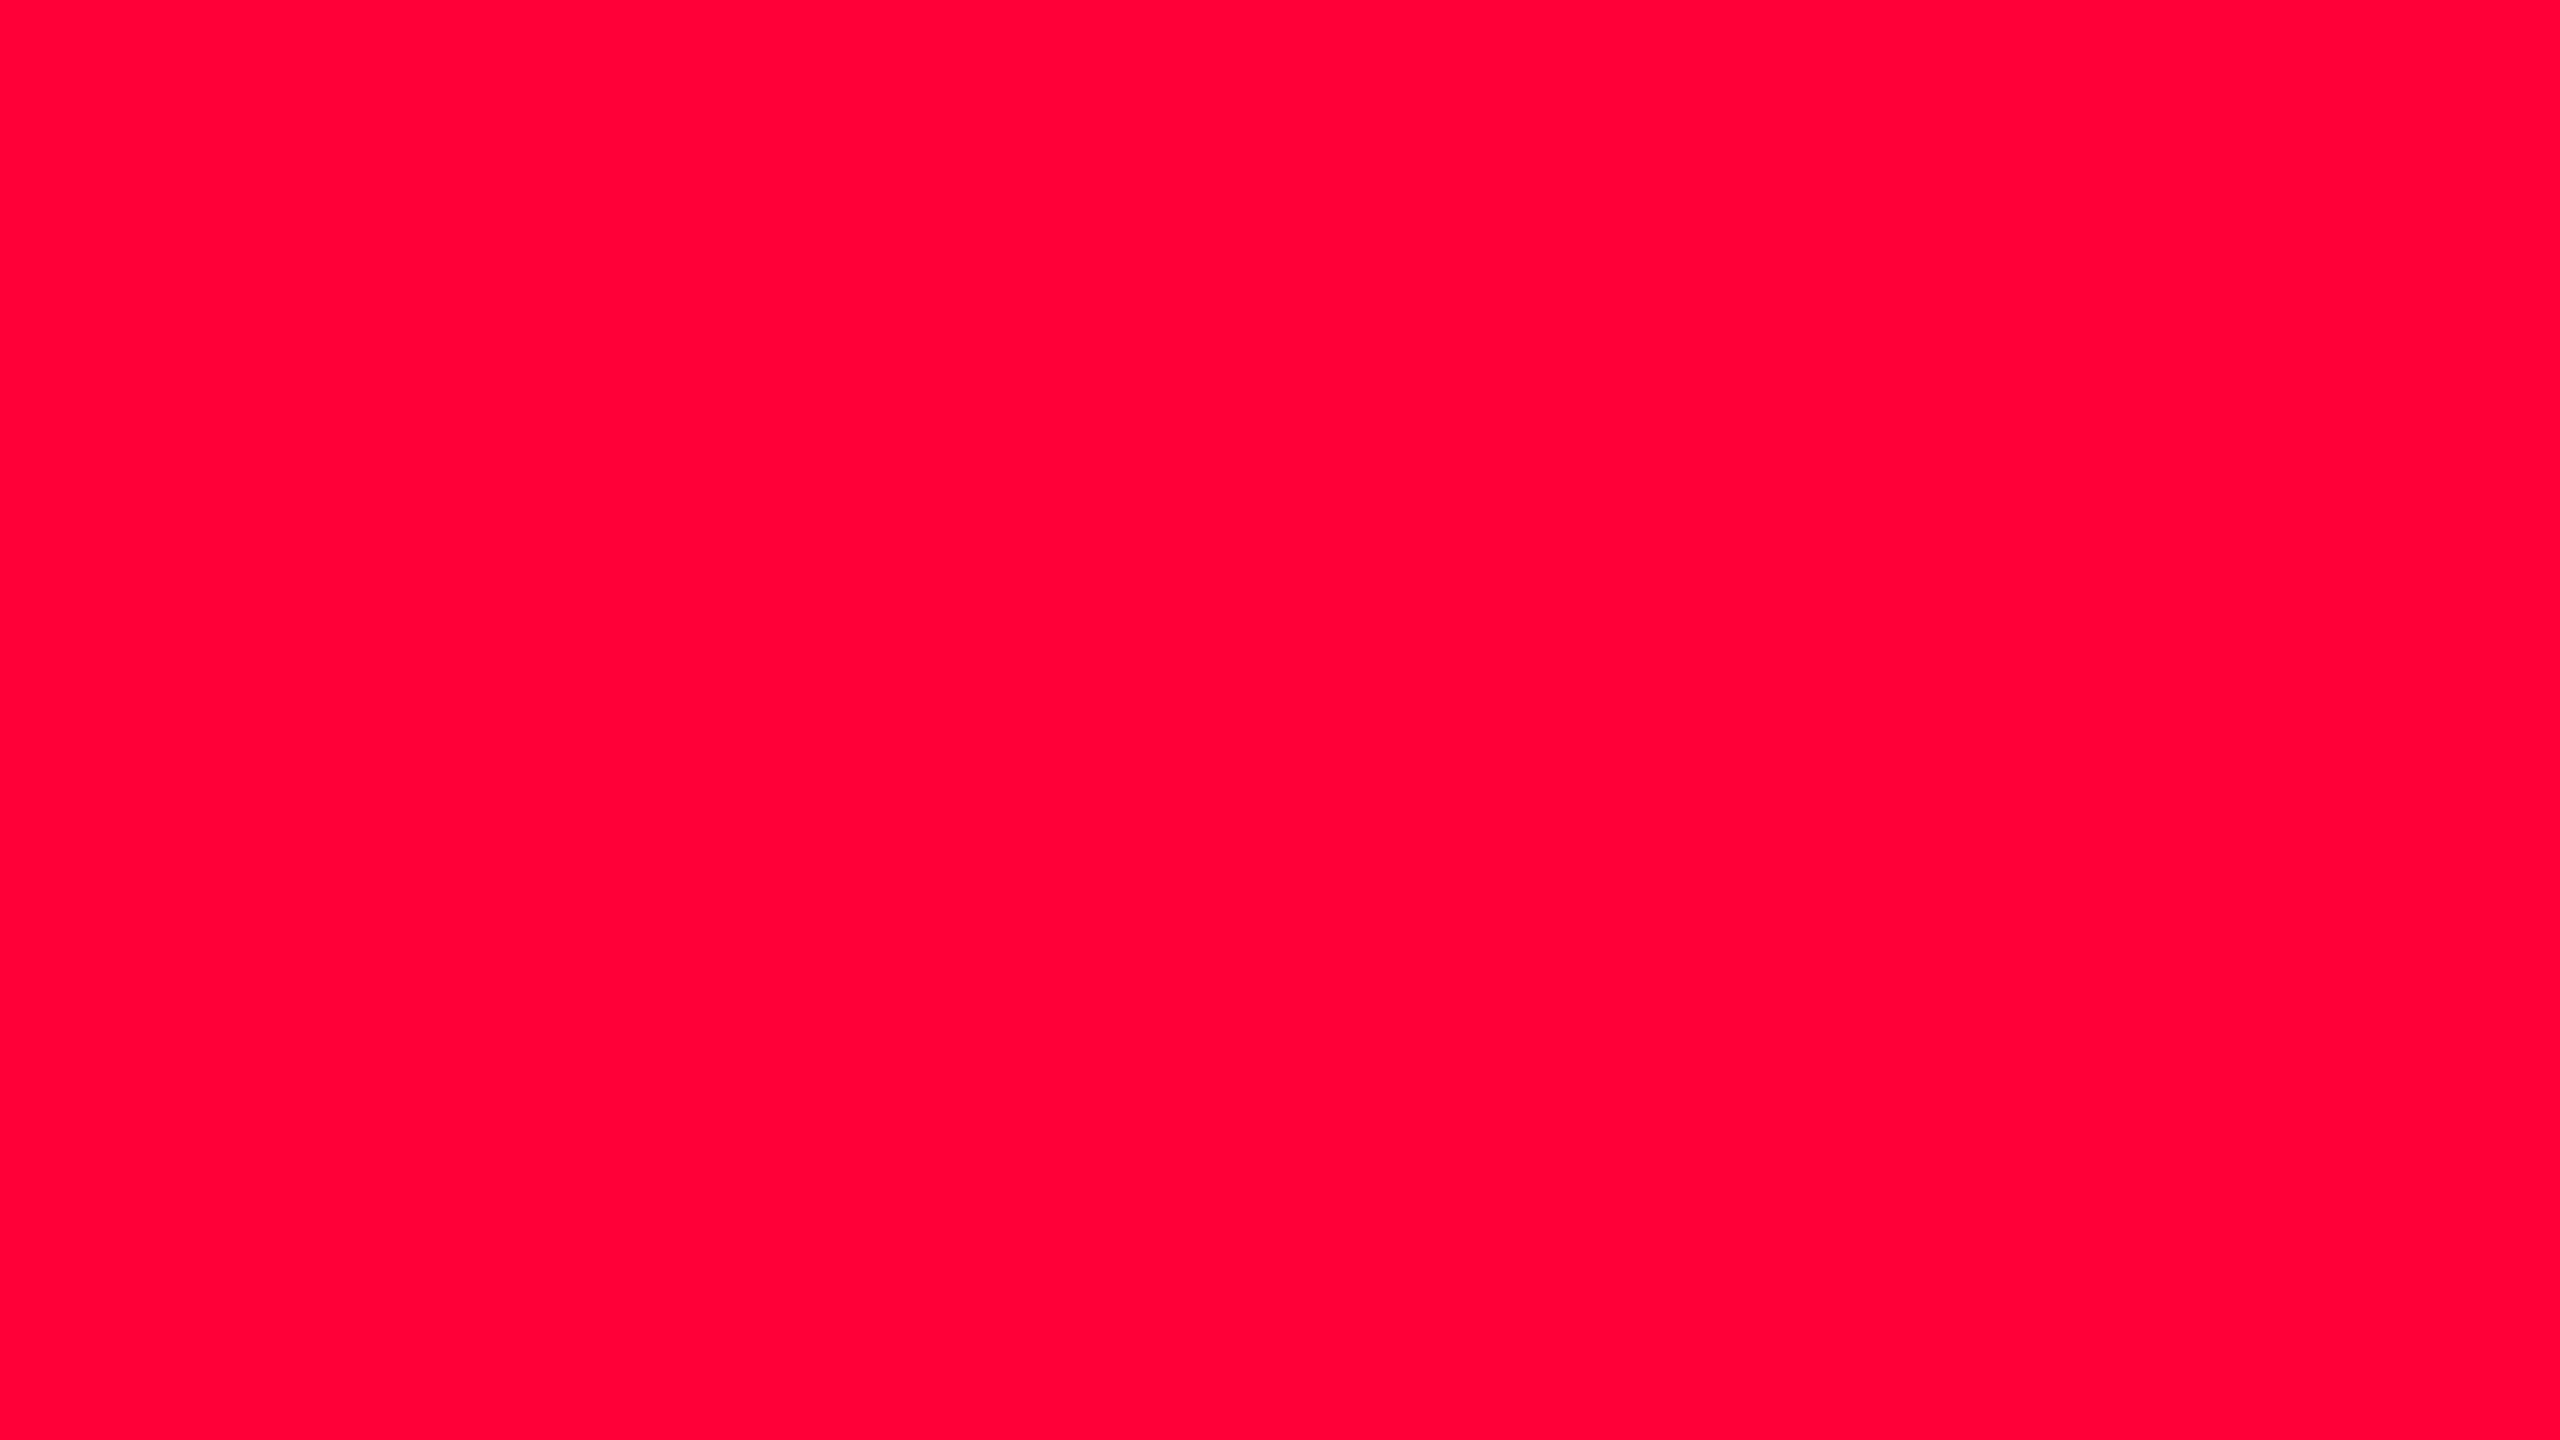 Màu đỏ carmine: Sự nổi bật của màu đỏ carmine làm cho nó trở thành một lựa chọn hoàn hảo cho các thiết kế sáng tạo. Đó là sự đỏ tươi rực rỡ nhất mà bạn đã từng thấy, đem lại cho các hình ảnh sức sống và cảm hứng mới.